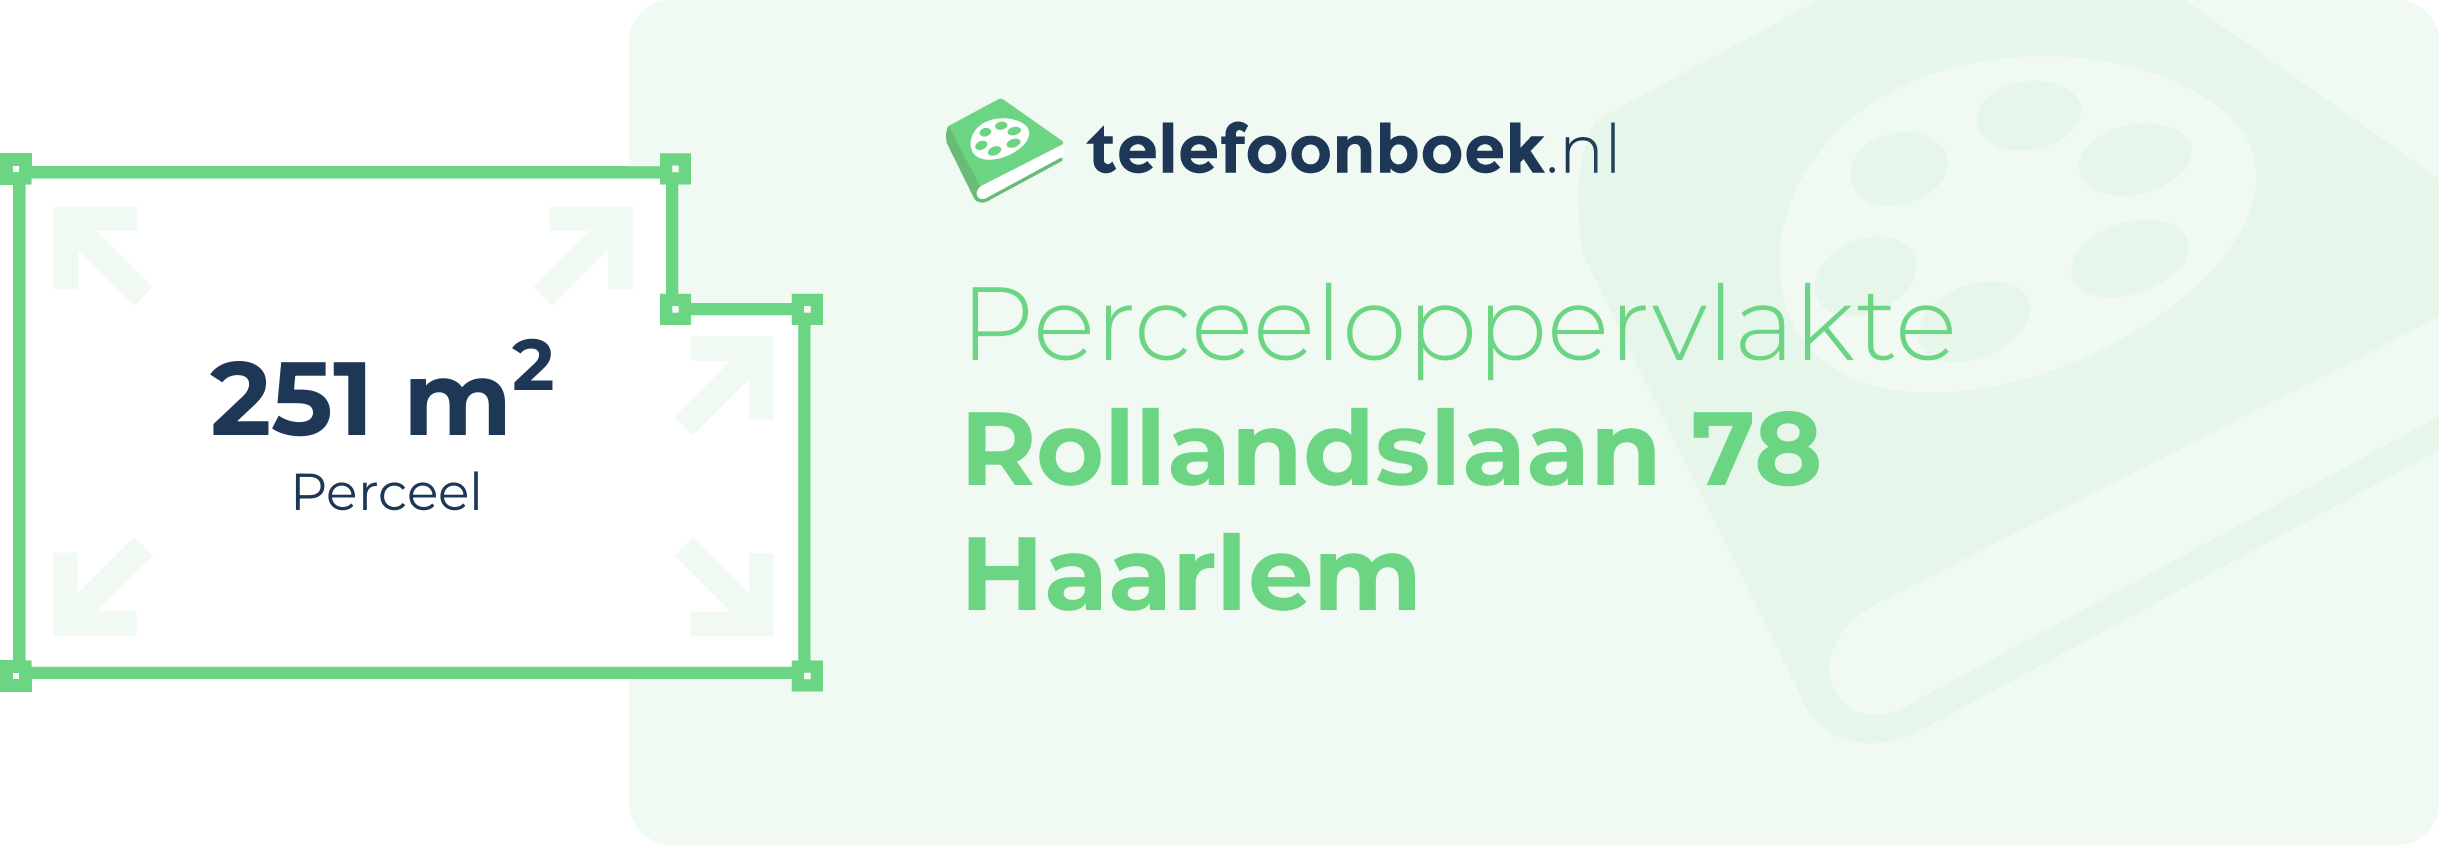 Perceeloppervlakte Rollandslaan 78 Haarlem